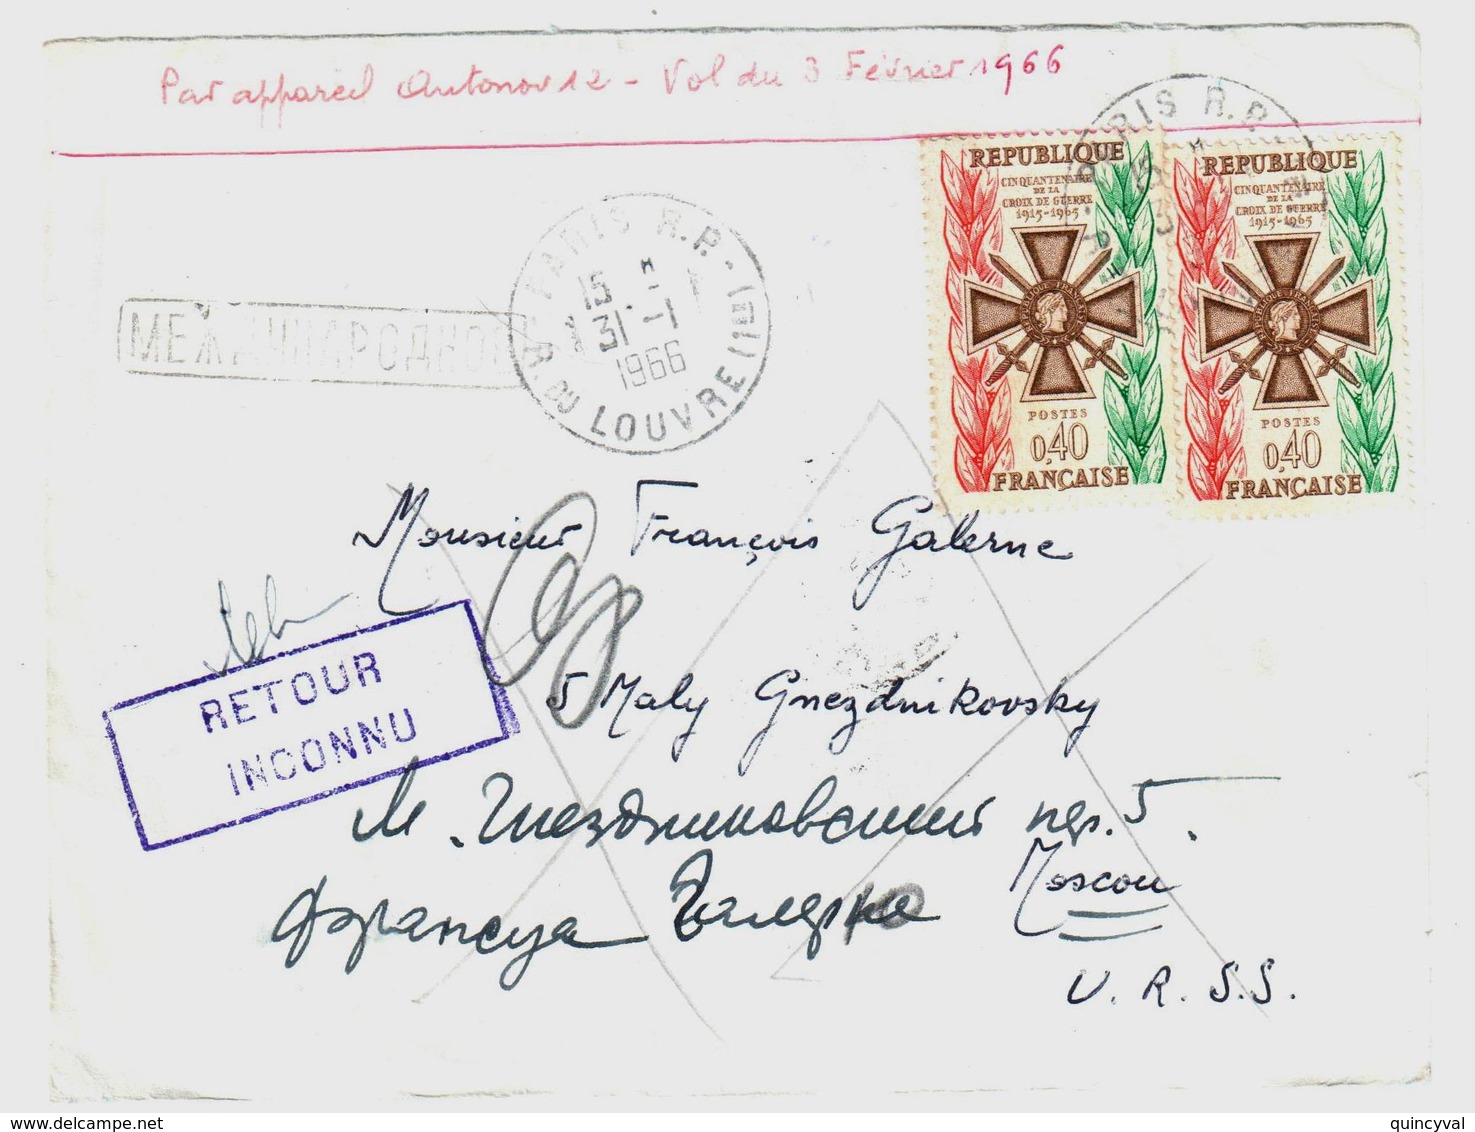 PARIS Lettre Dest Moscou URSS Russie Retour Envoyeur INCONNU 40c Croix De Guerre Yv 1452 Ob 31 1 1966 Verso MOCKBA - Lettres & Documents